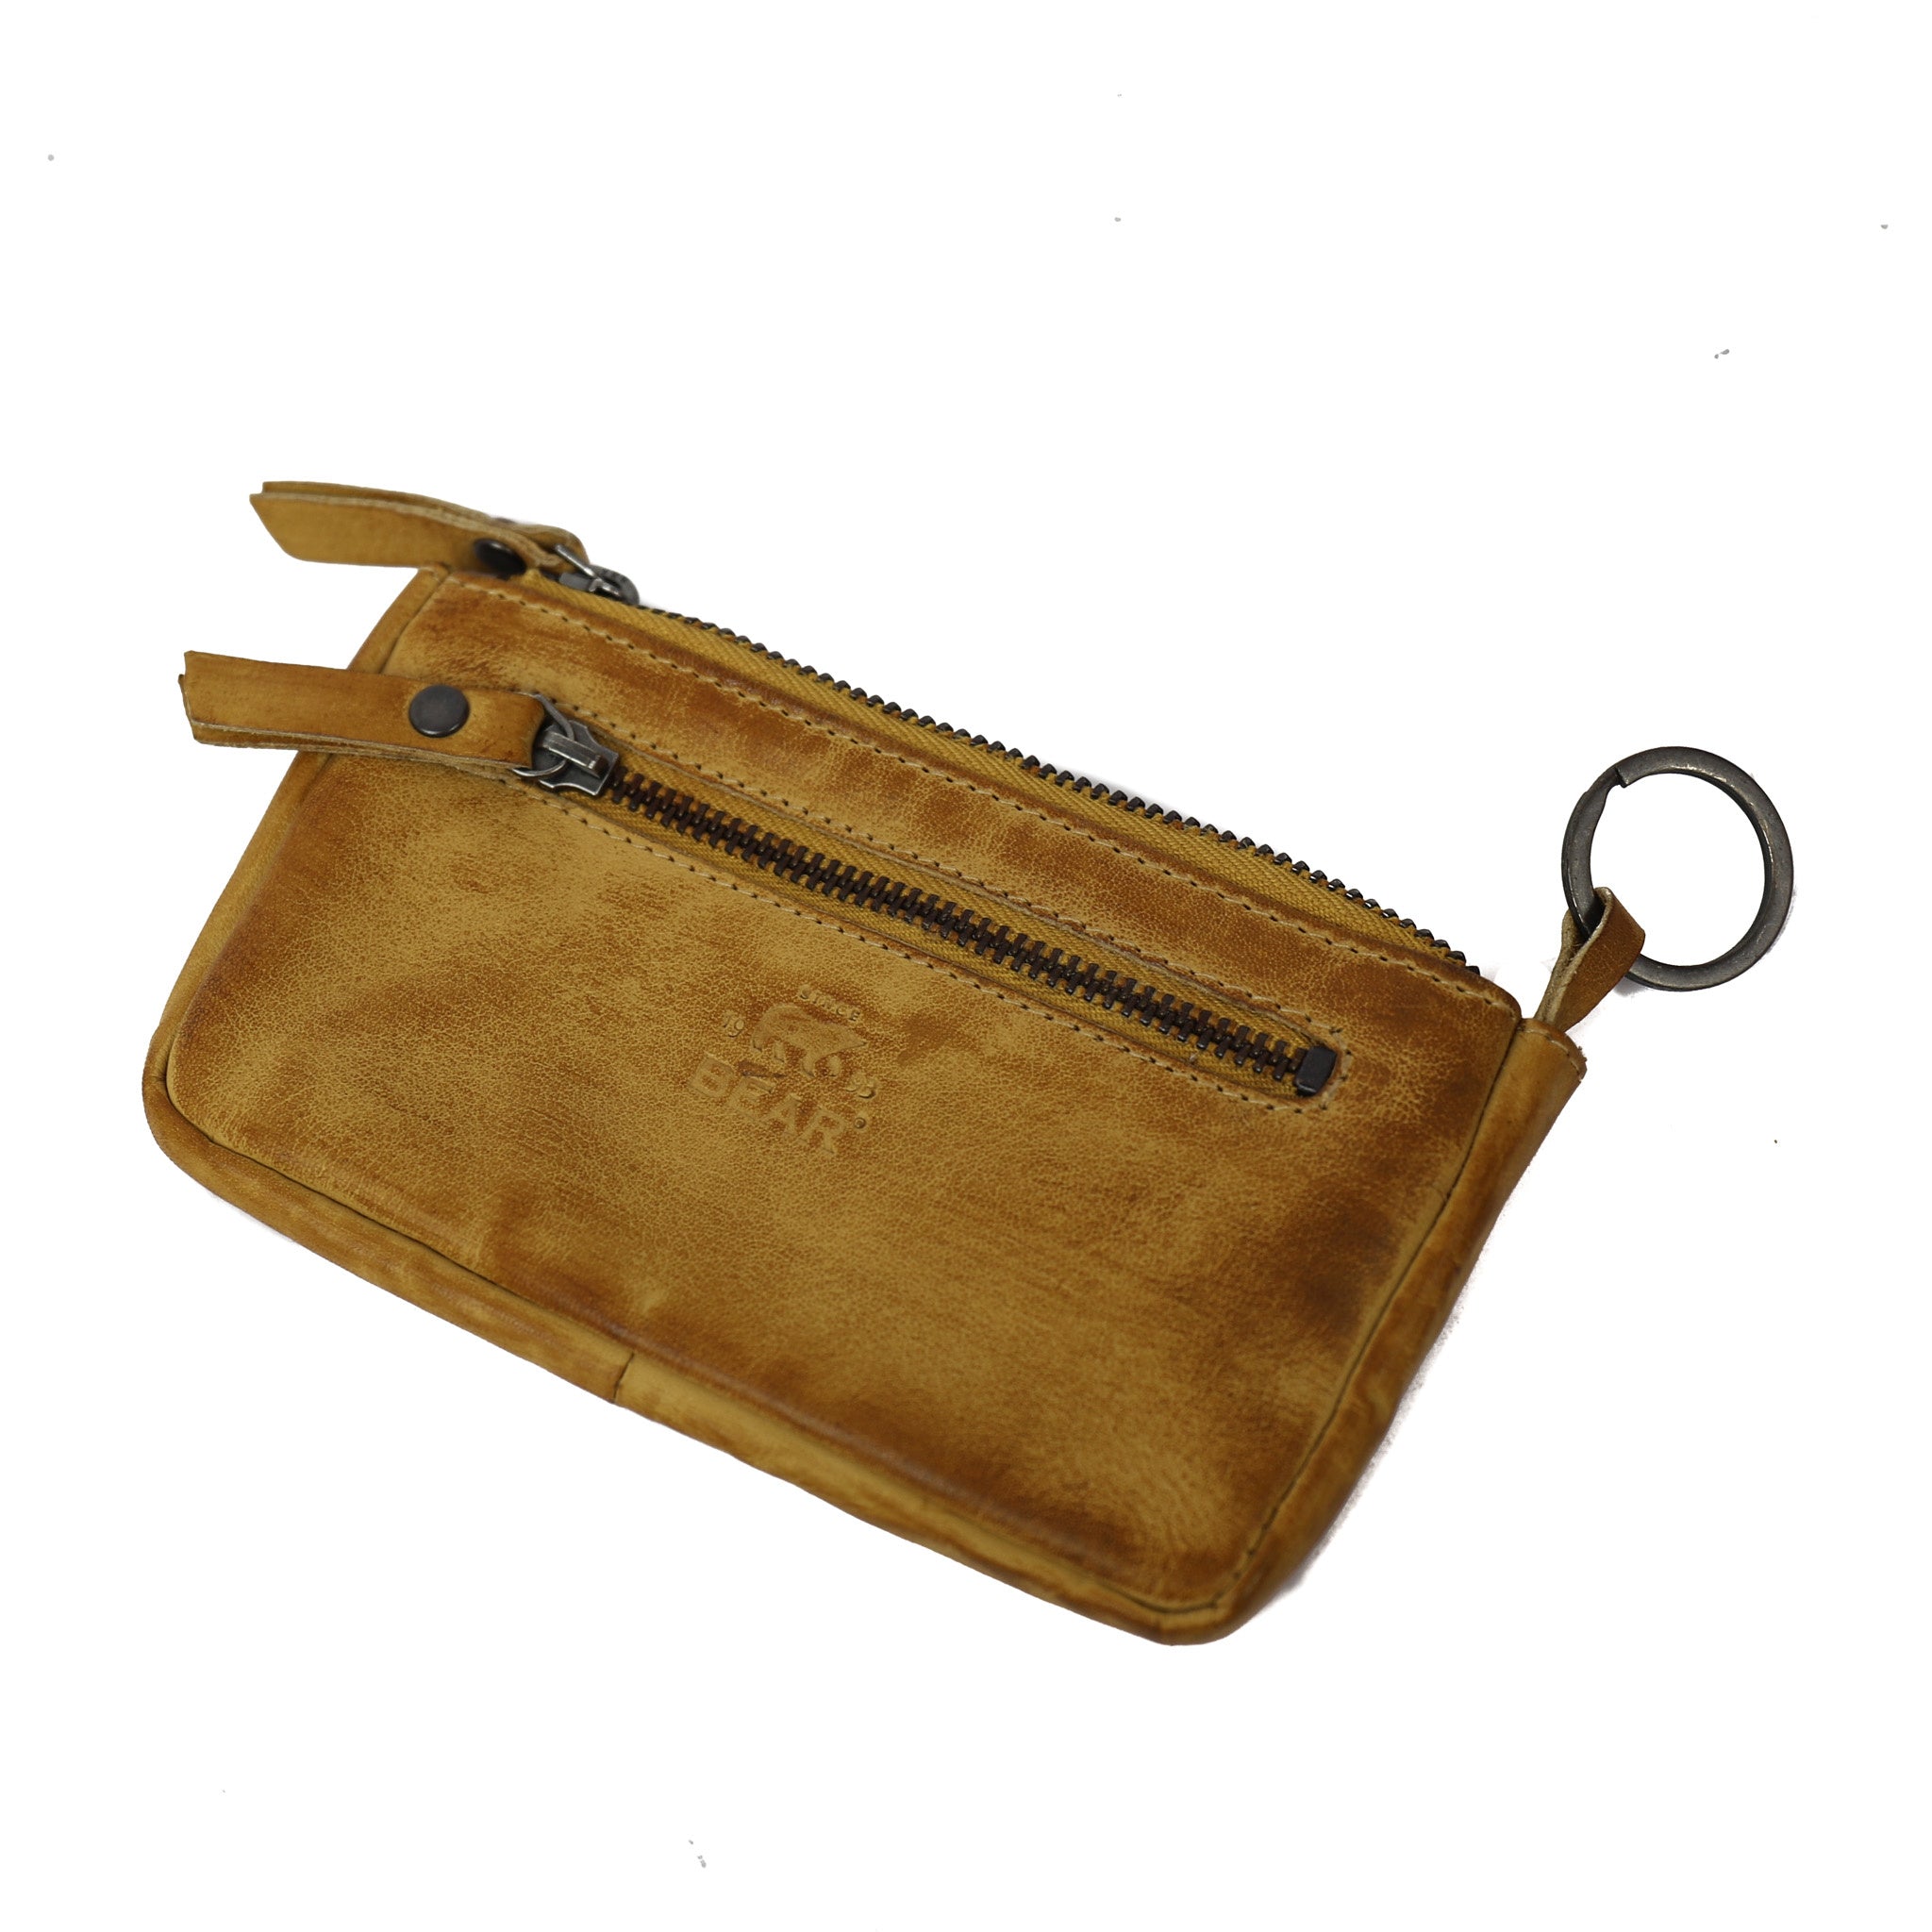 Key pouch 'Mila' yellow - CP 7090